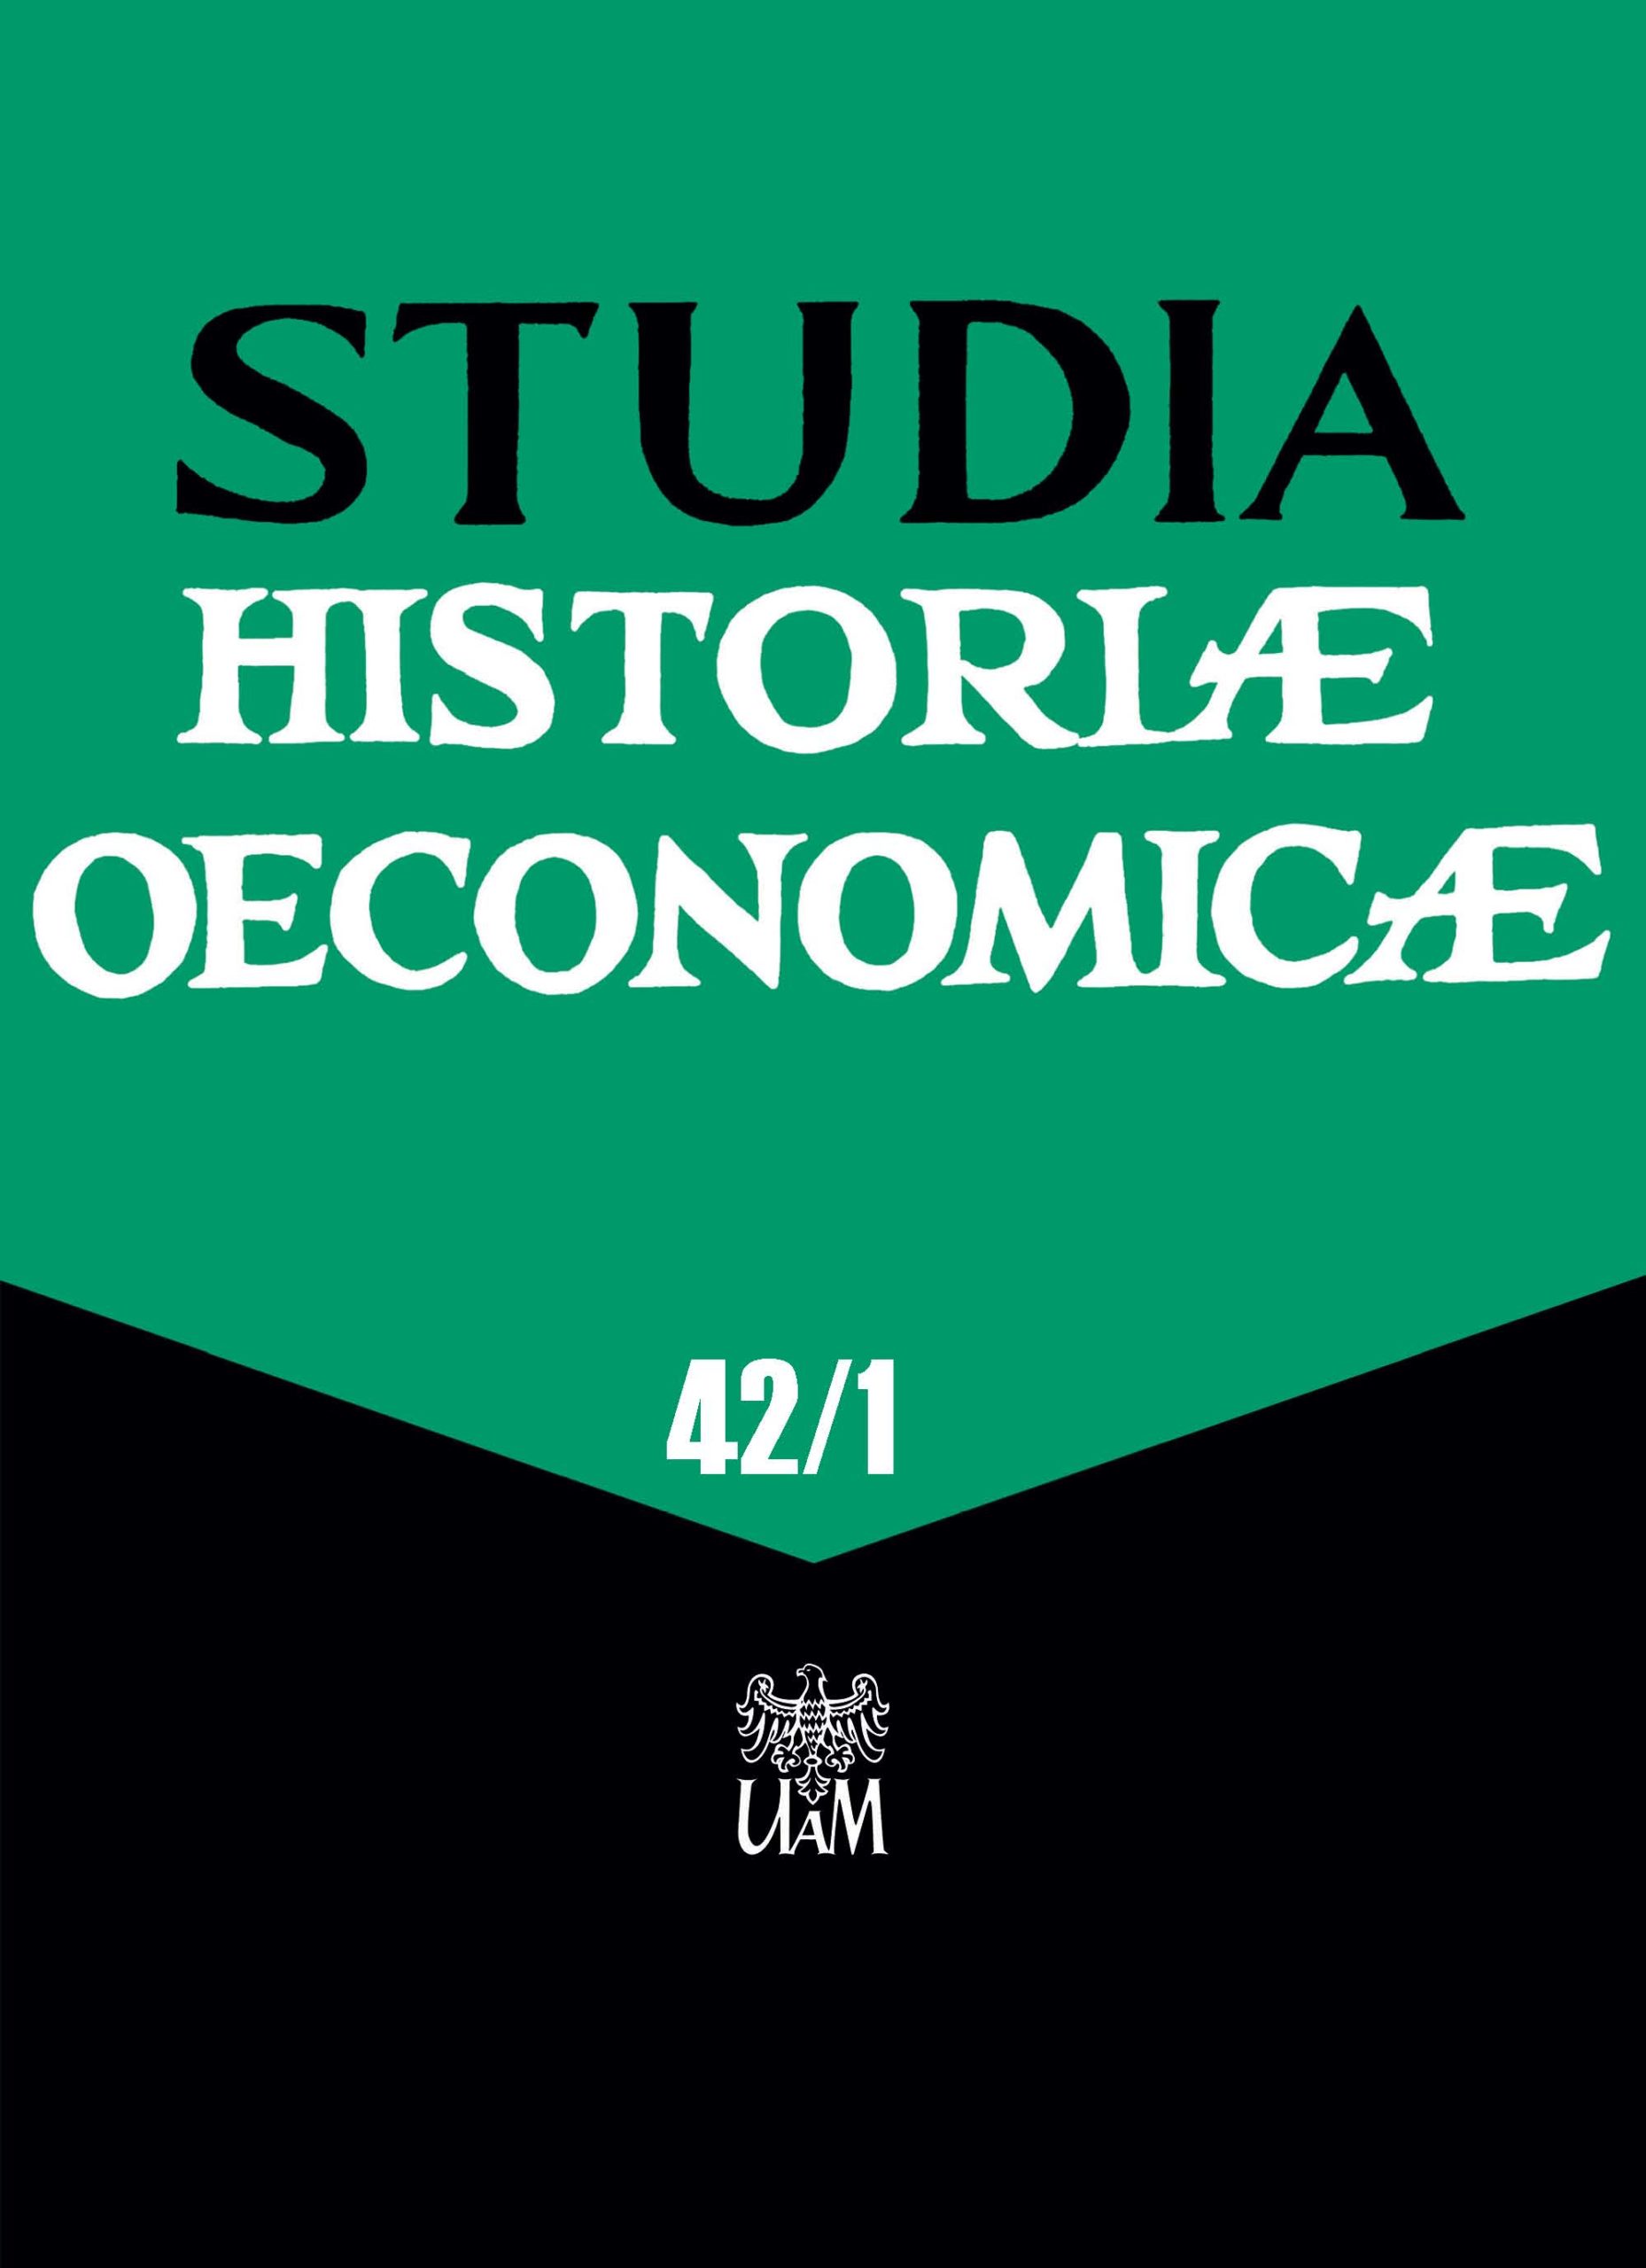 Studia Historiae Oeconomicae, vol. 42/1